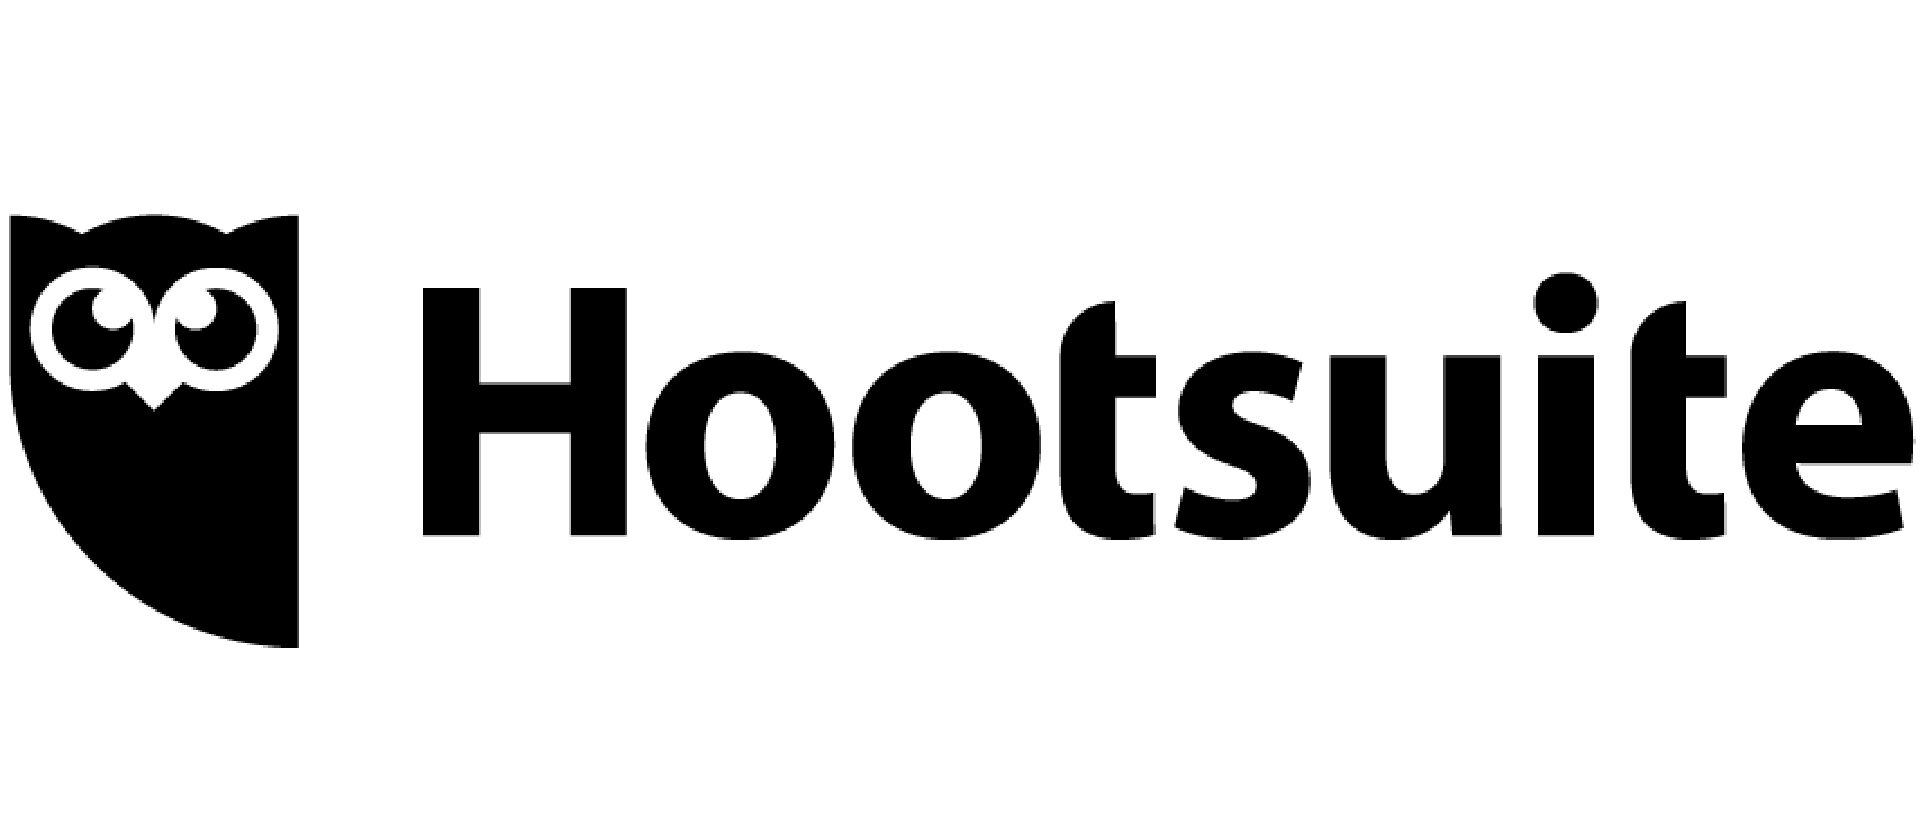 Hootsuite_Web.jpg